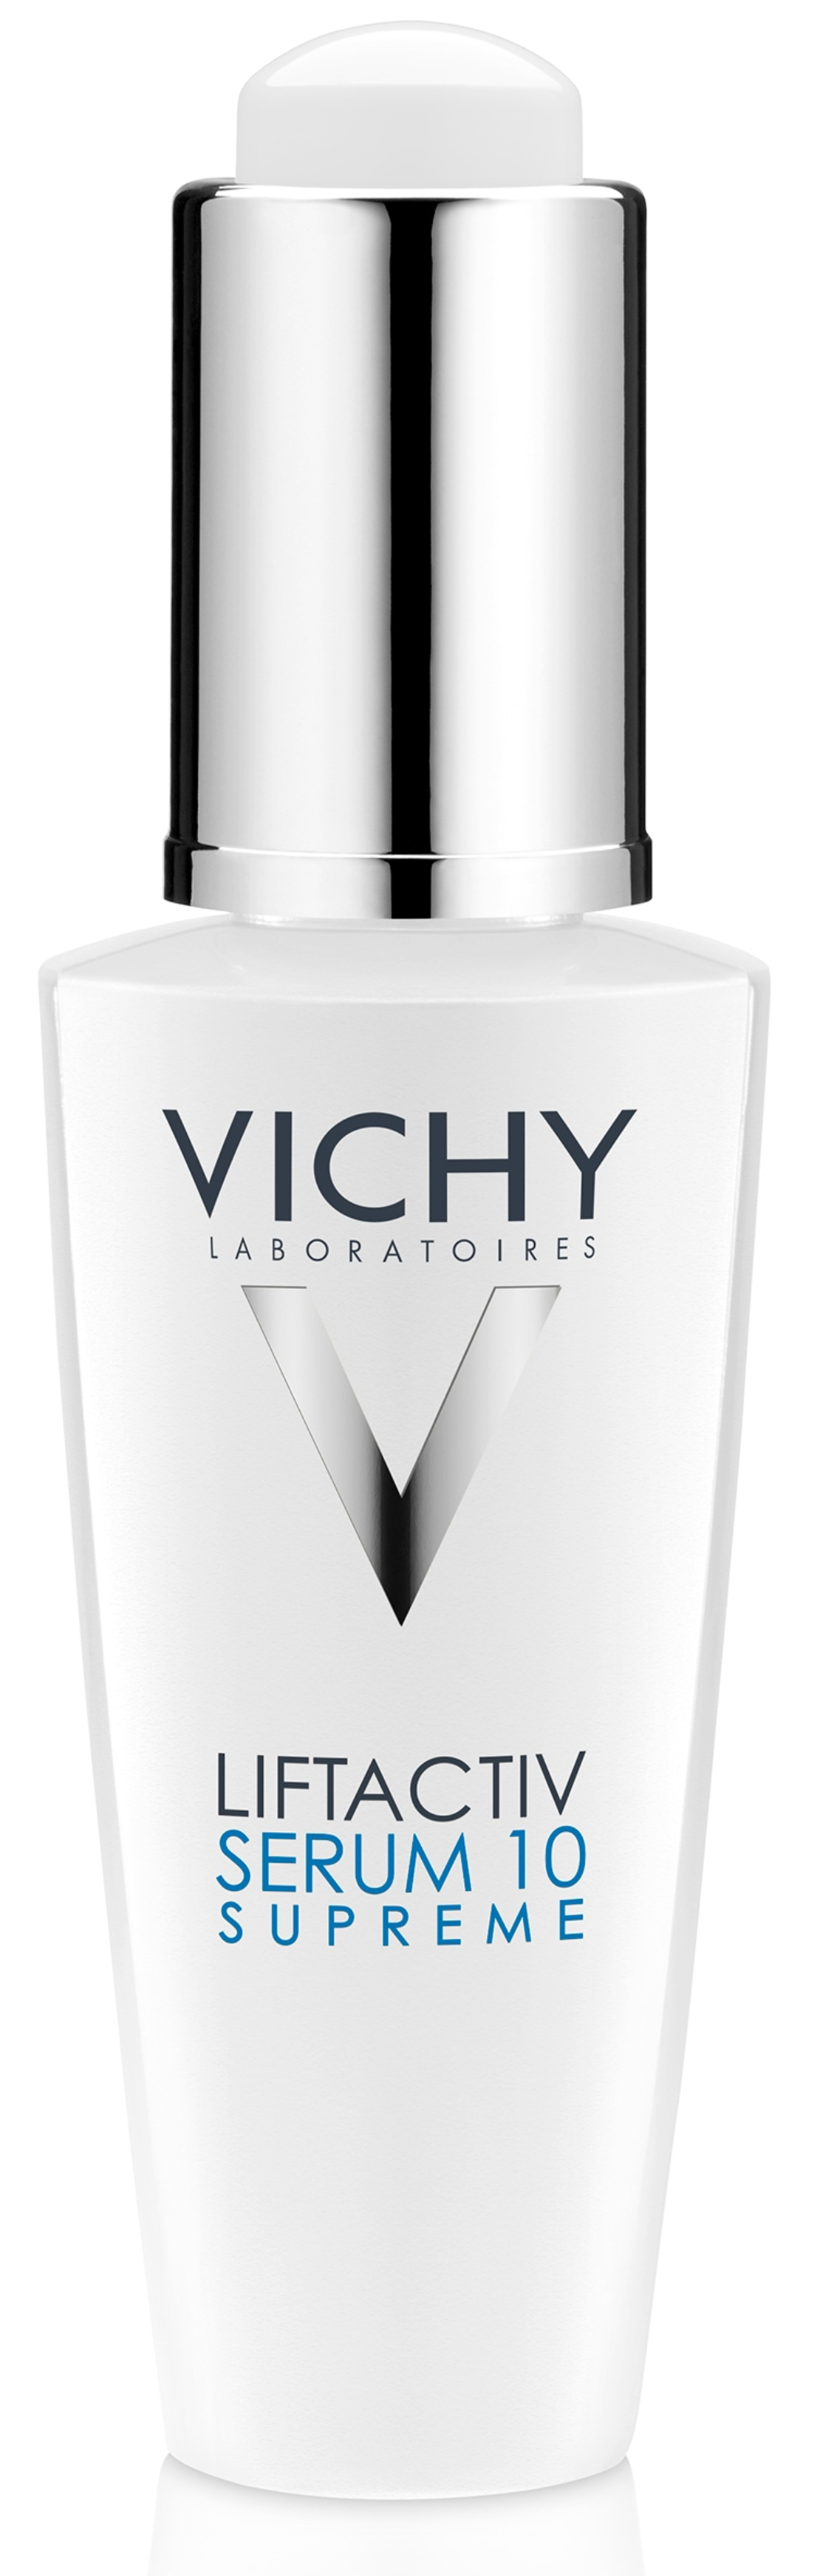 וישי - ליפטאקטיב סרום 10 Vichy Liftactive Serum 10 Supreme 